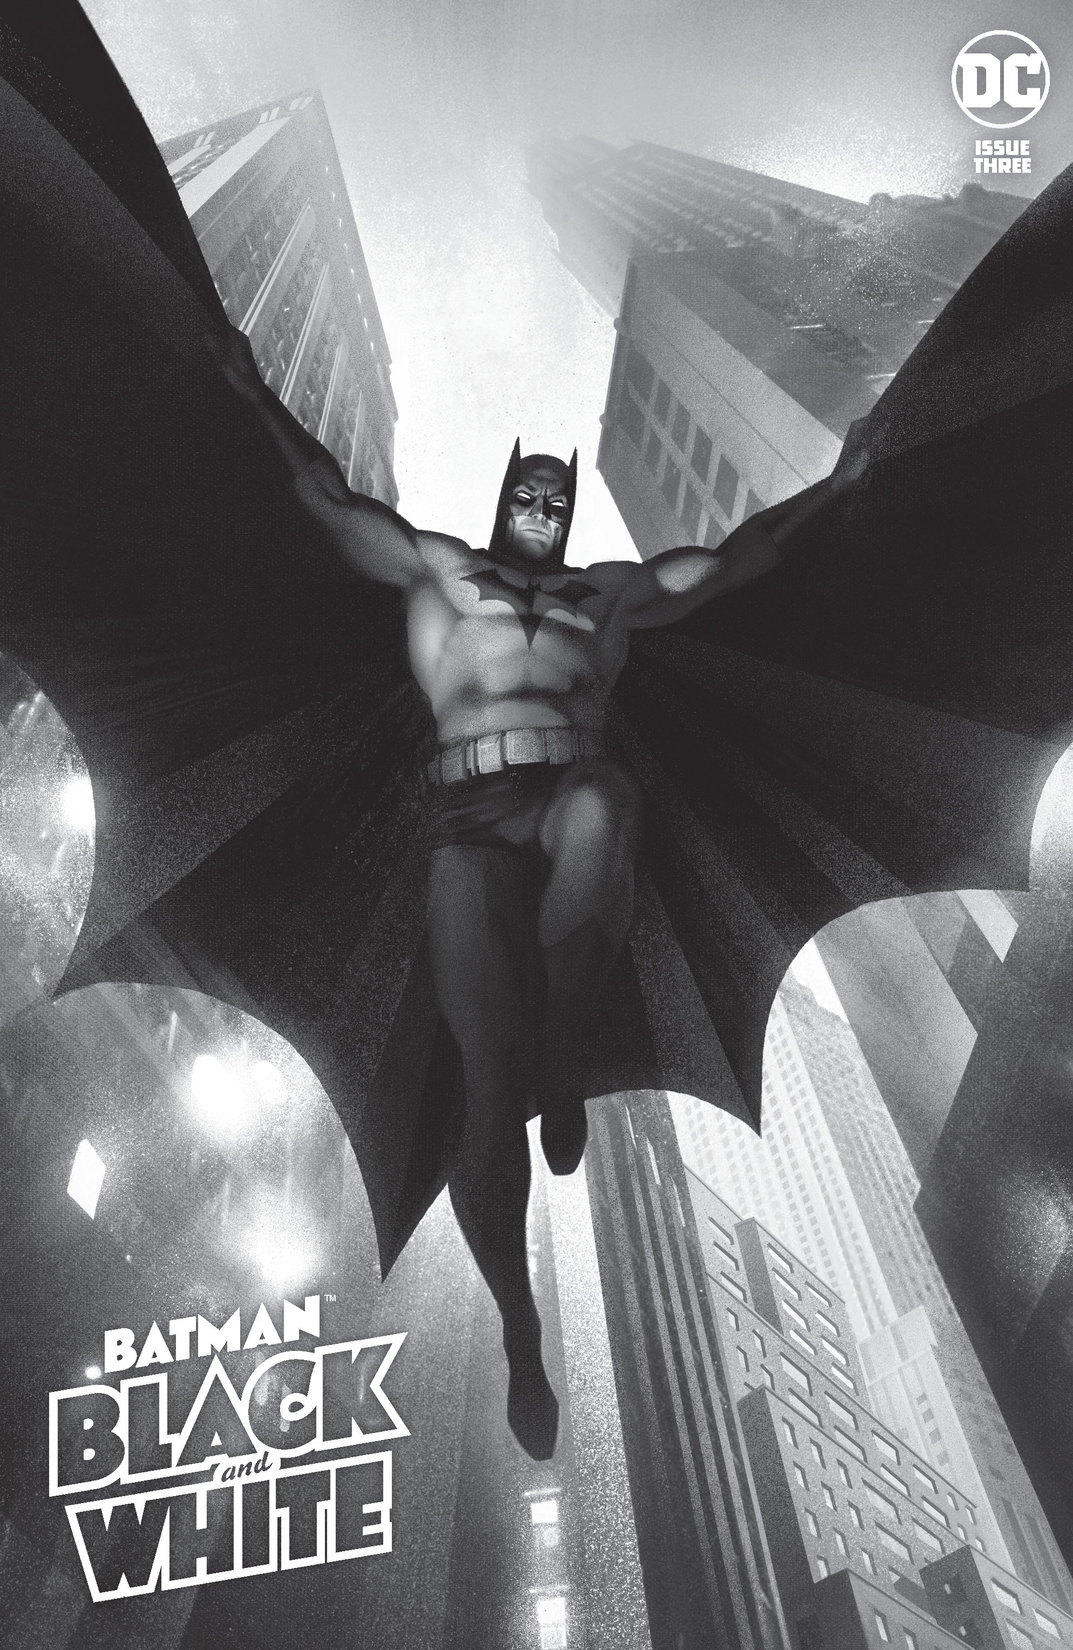 Batman Black & White (2020-) #3 preview images